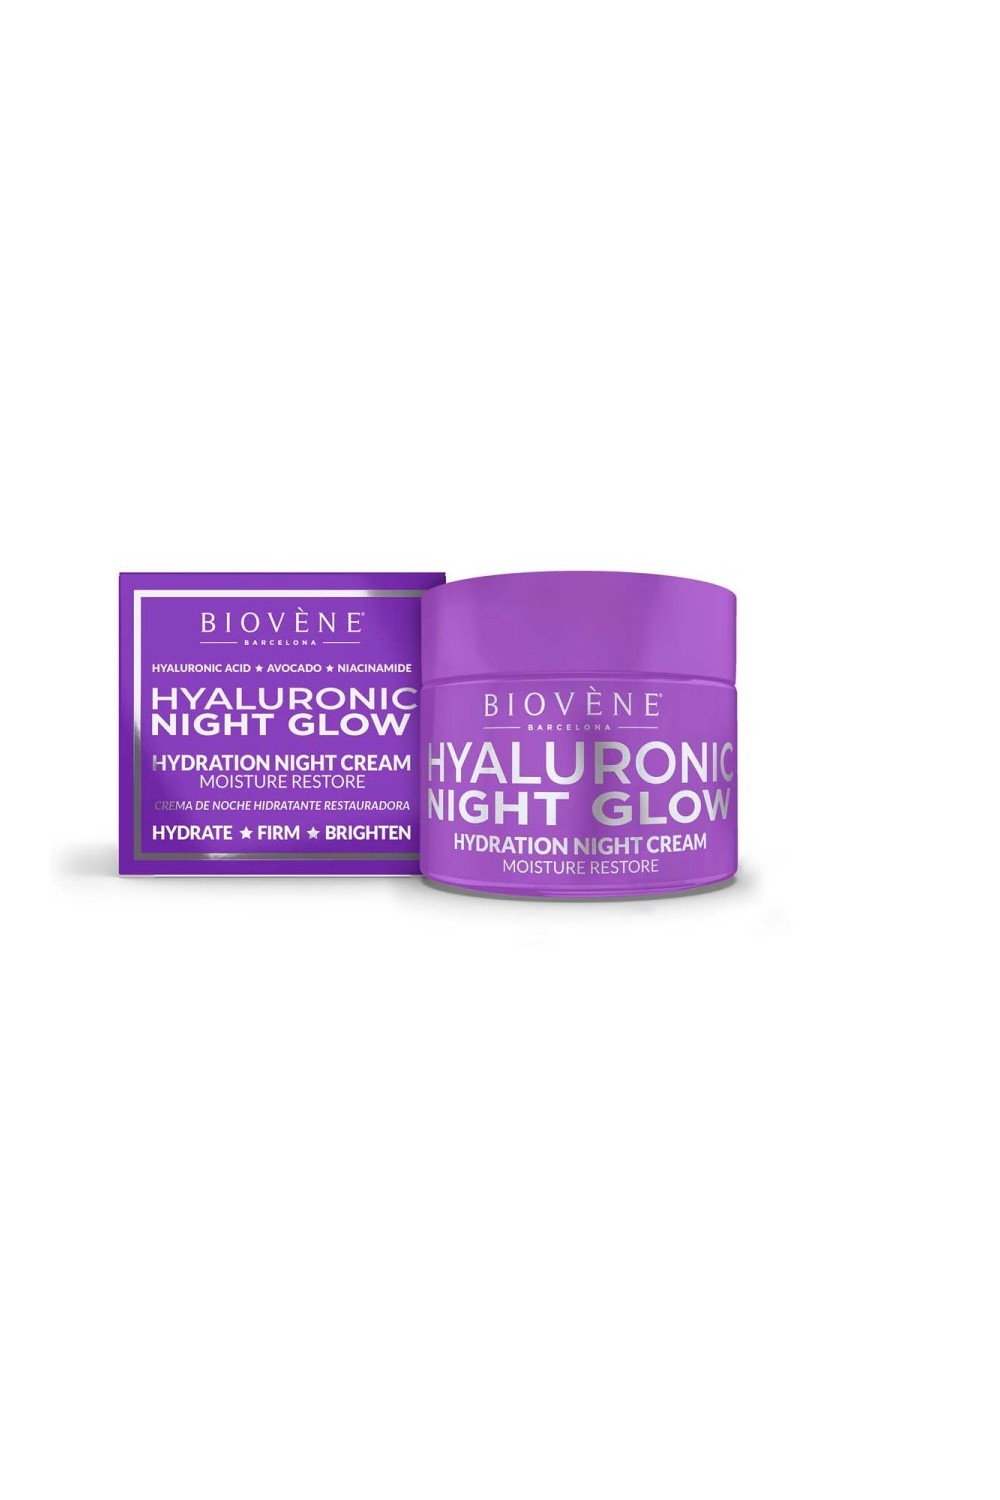 Biovene Hyaluronic Night Glow Hydration Night Cream Moisture Restore 50ml